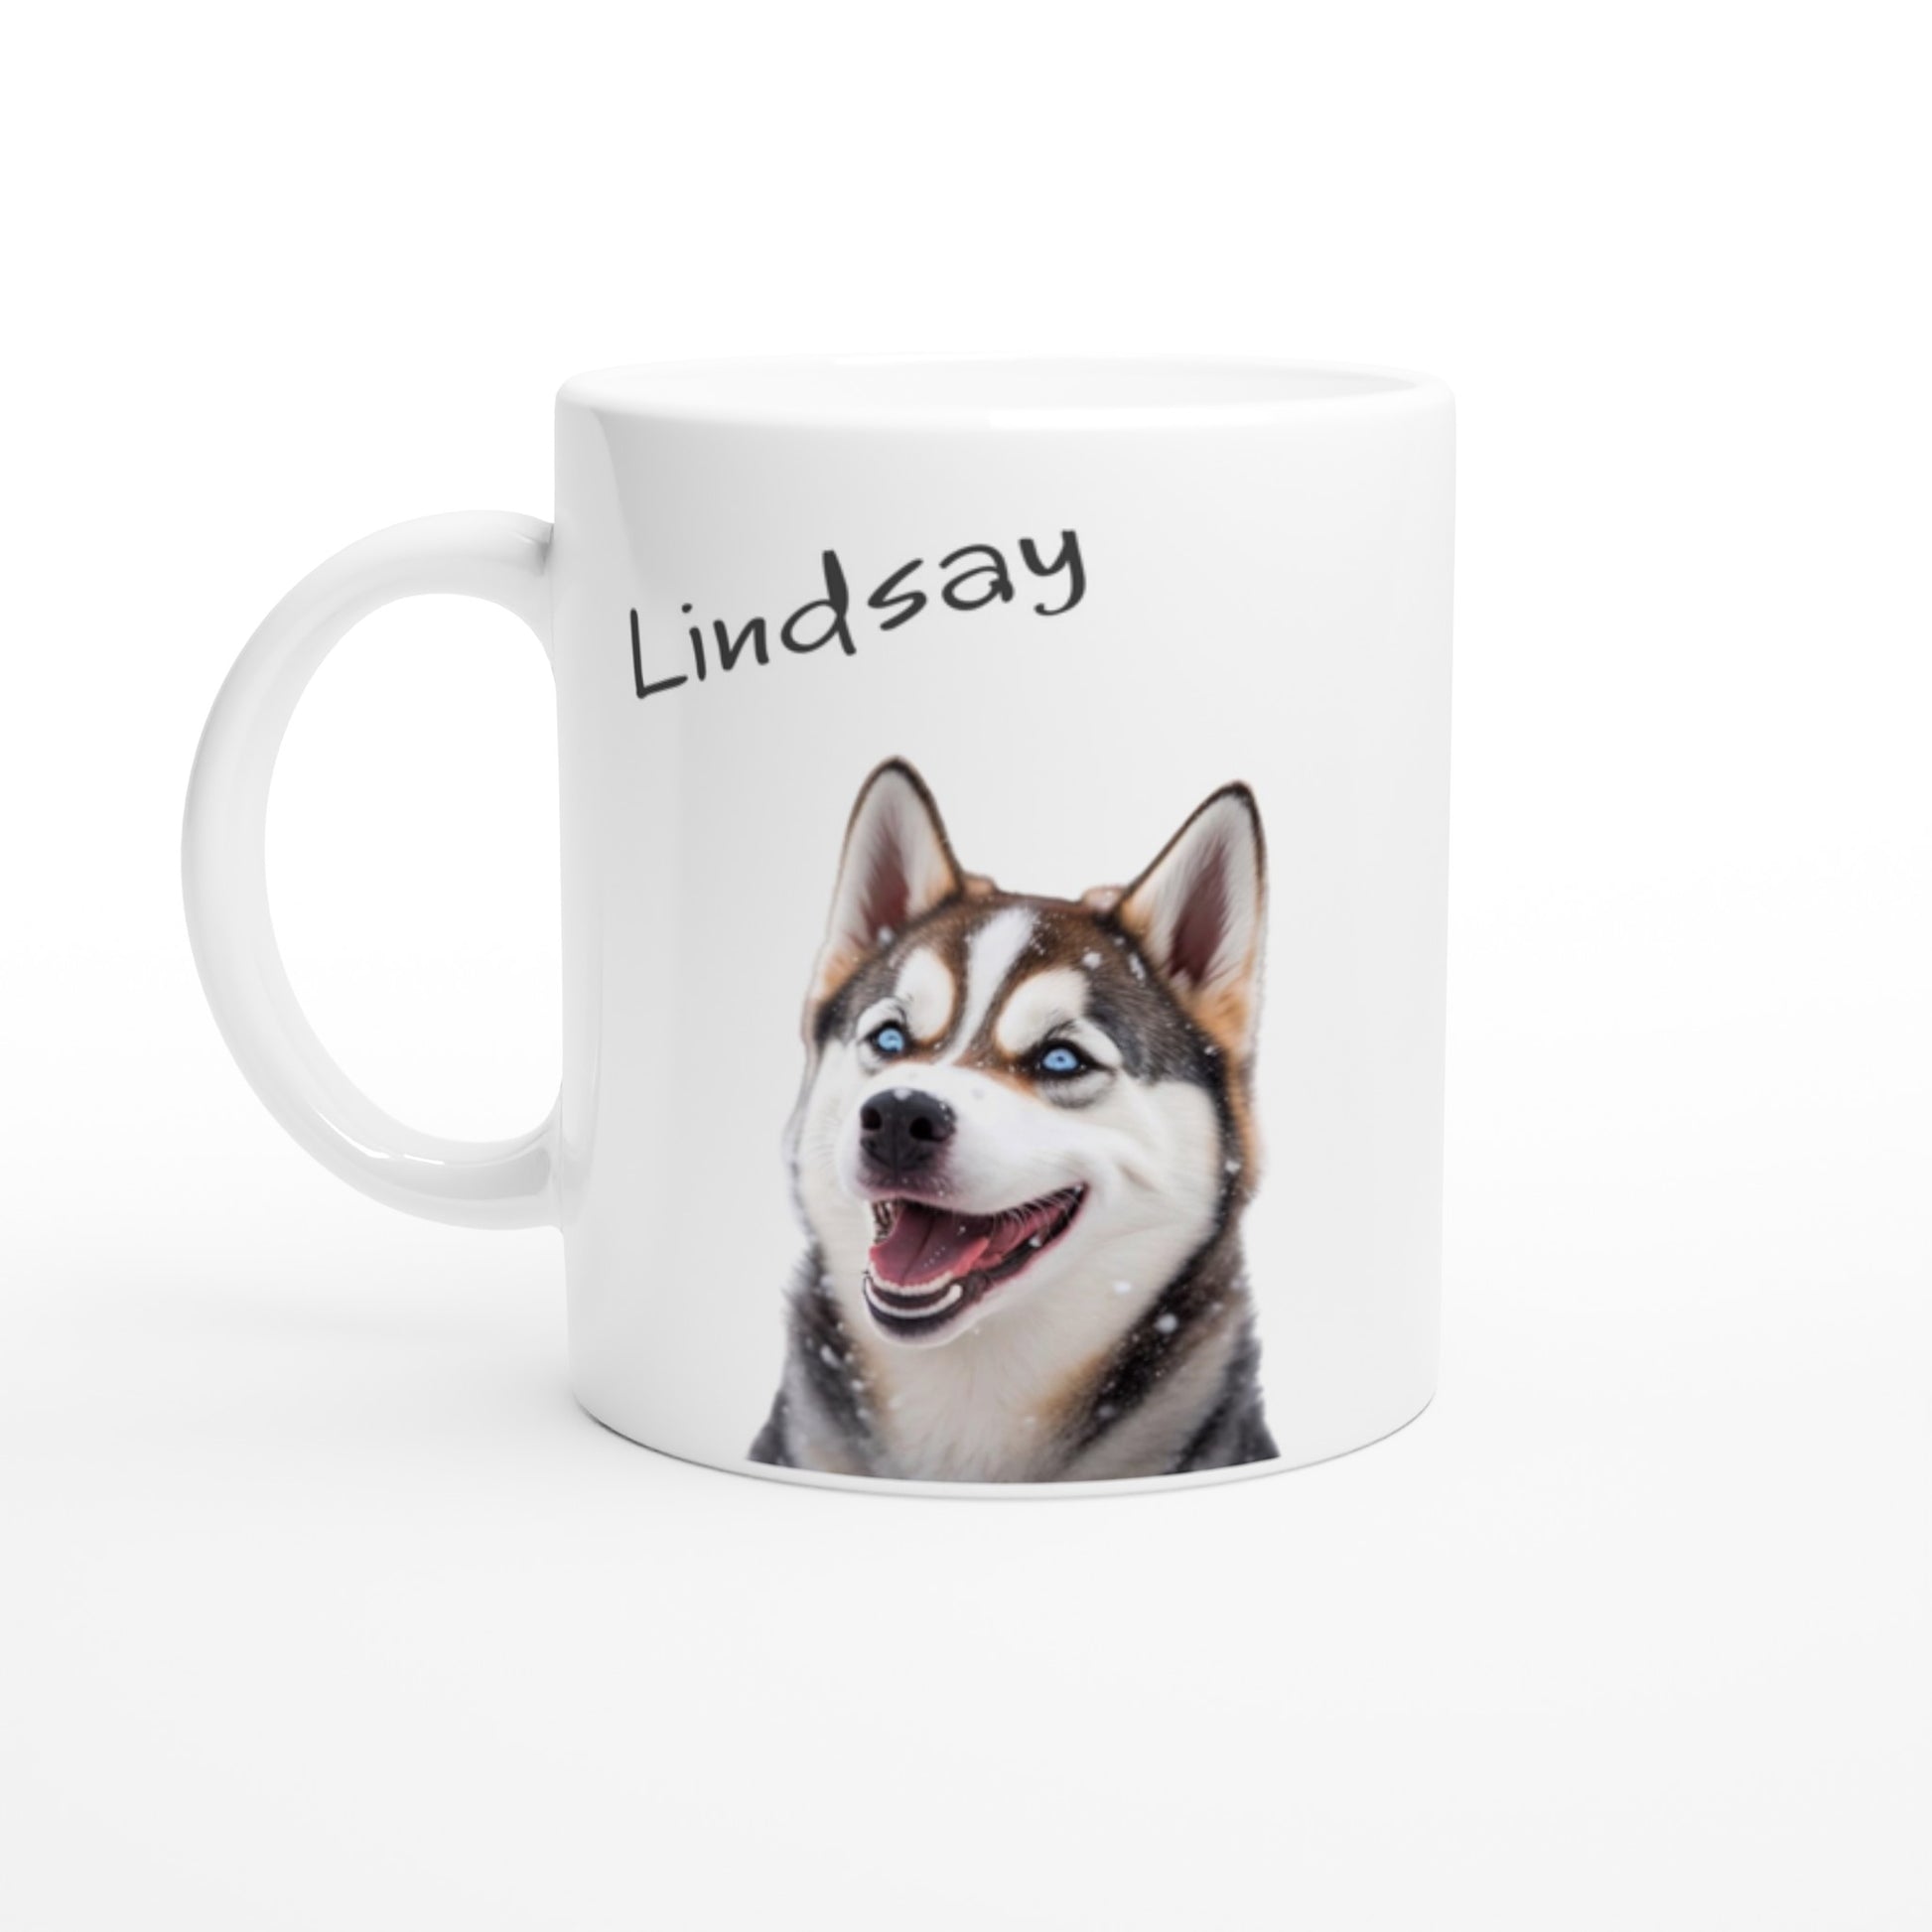 Siberian husky mug with name